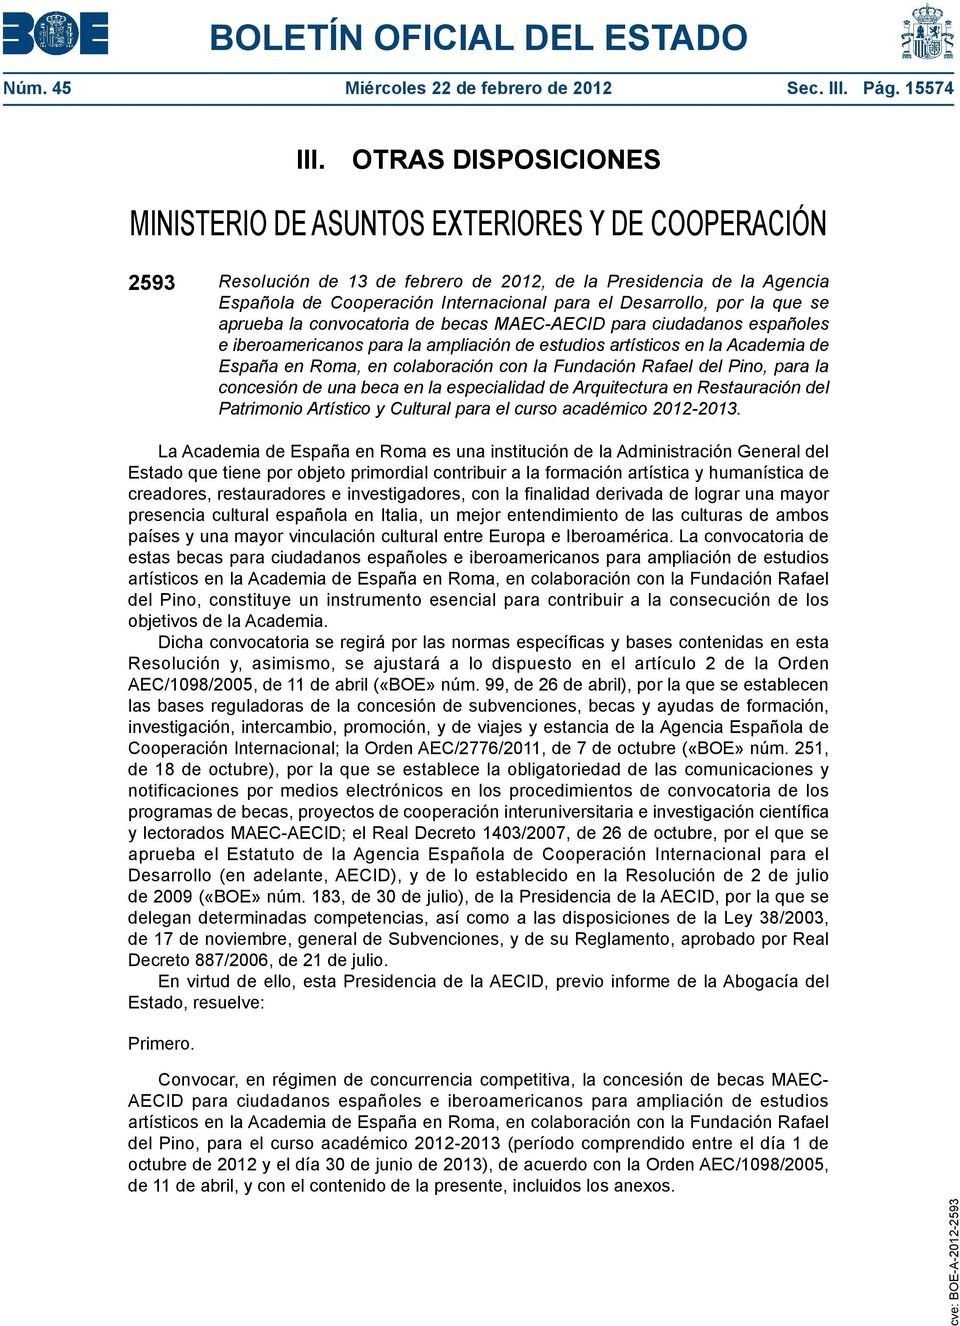 Desarrollo, por la que se aprueba la convocatoria de becas MAEC-AECID para ciudadanos españoles e iberoamericanos para la ampliación de estudios artísticos en la Academia de España en Roma, en